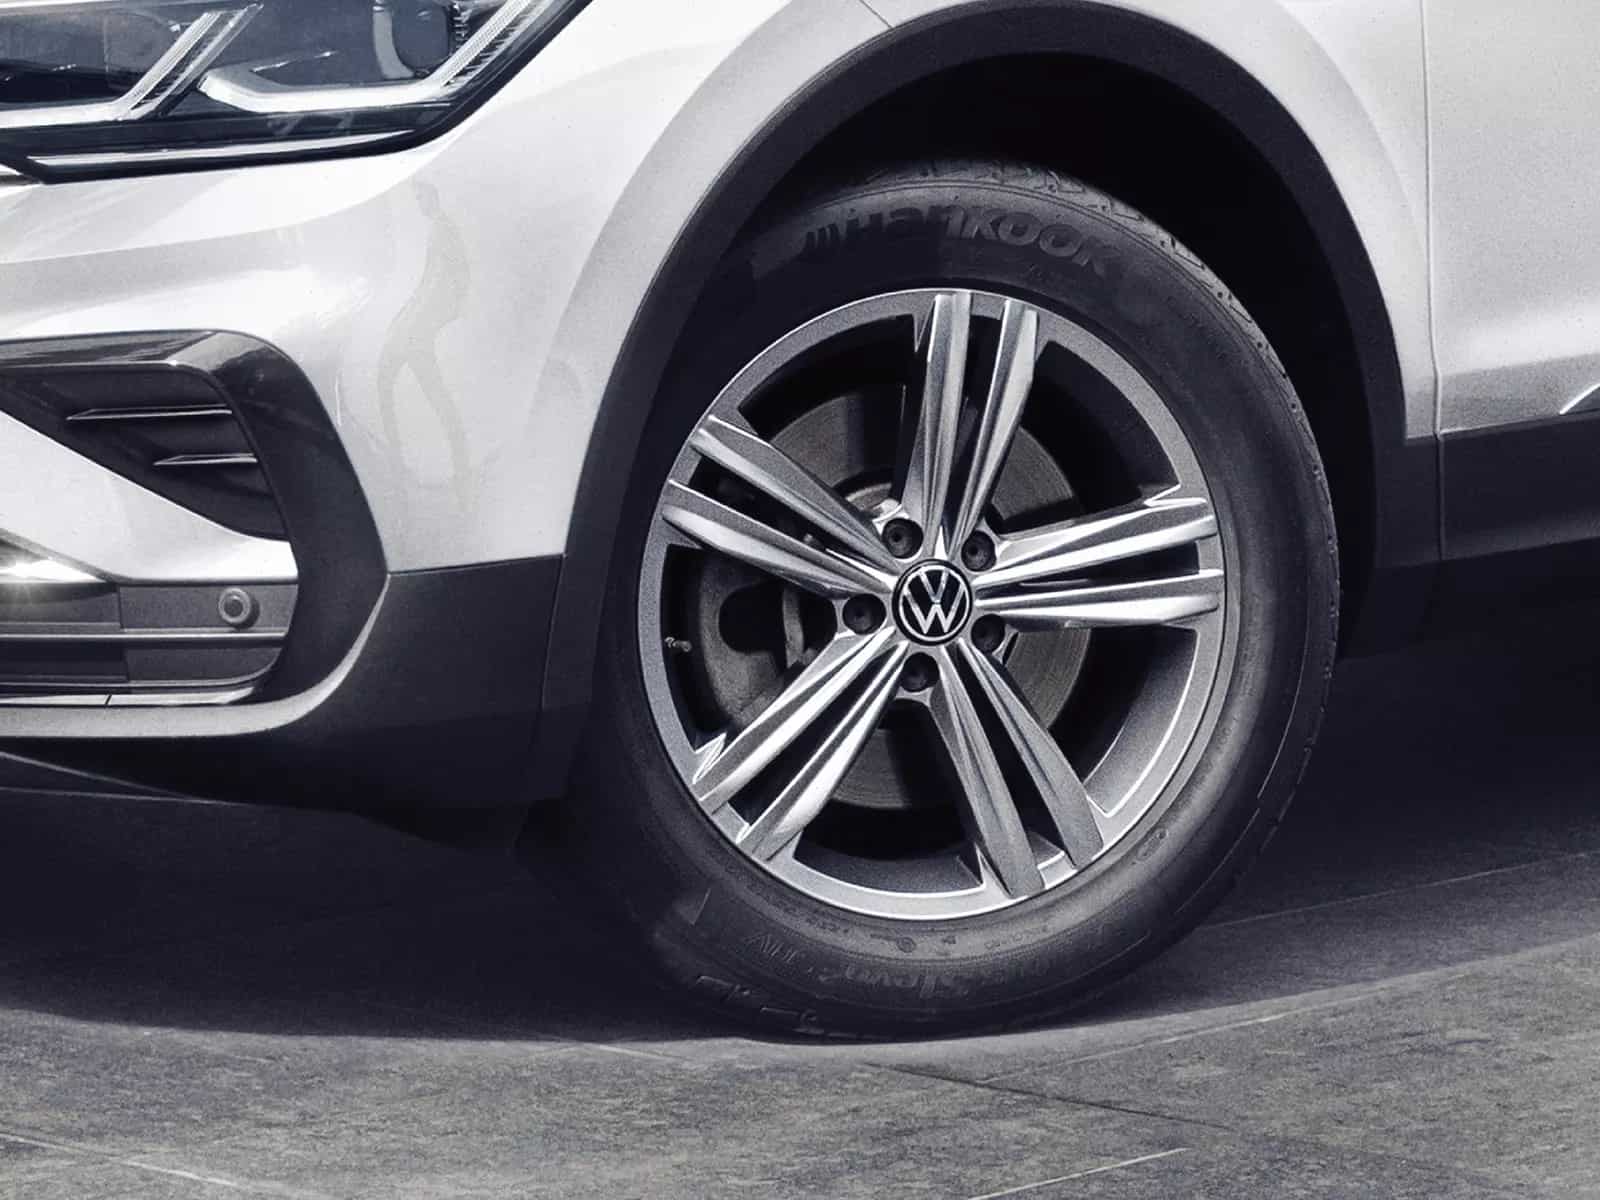 Volkswagen Tiguan Exclusive Edition: New Features